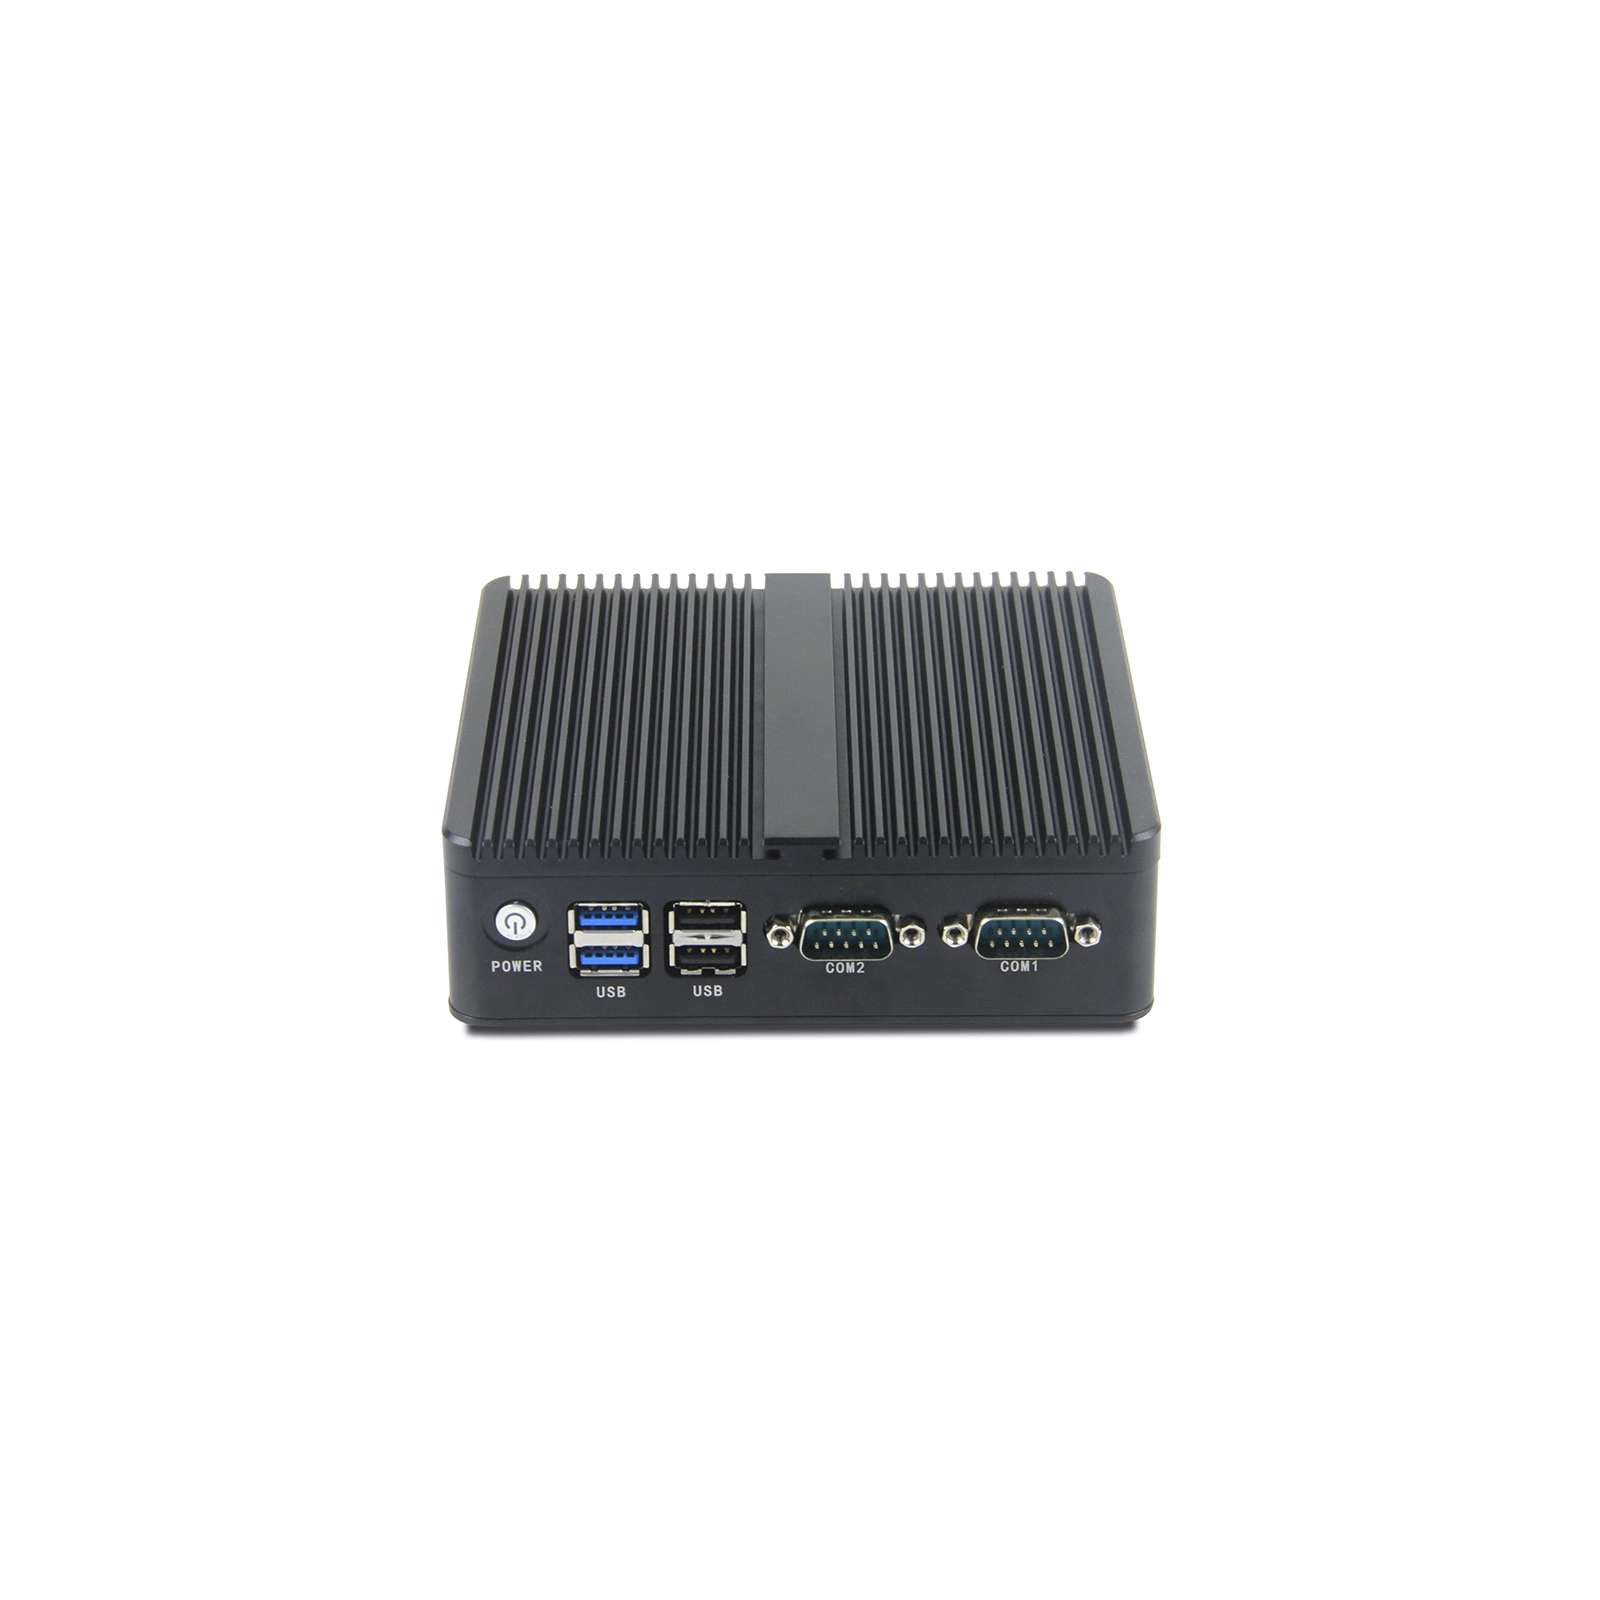 Промышленный ПК Syncotek GOLE BOX-1 J4125/4GB/128GB SSD/USBx4/RS232x2/LANx2VGA/HDMI (S-PC-0089) изображение 6